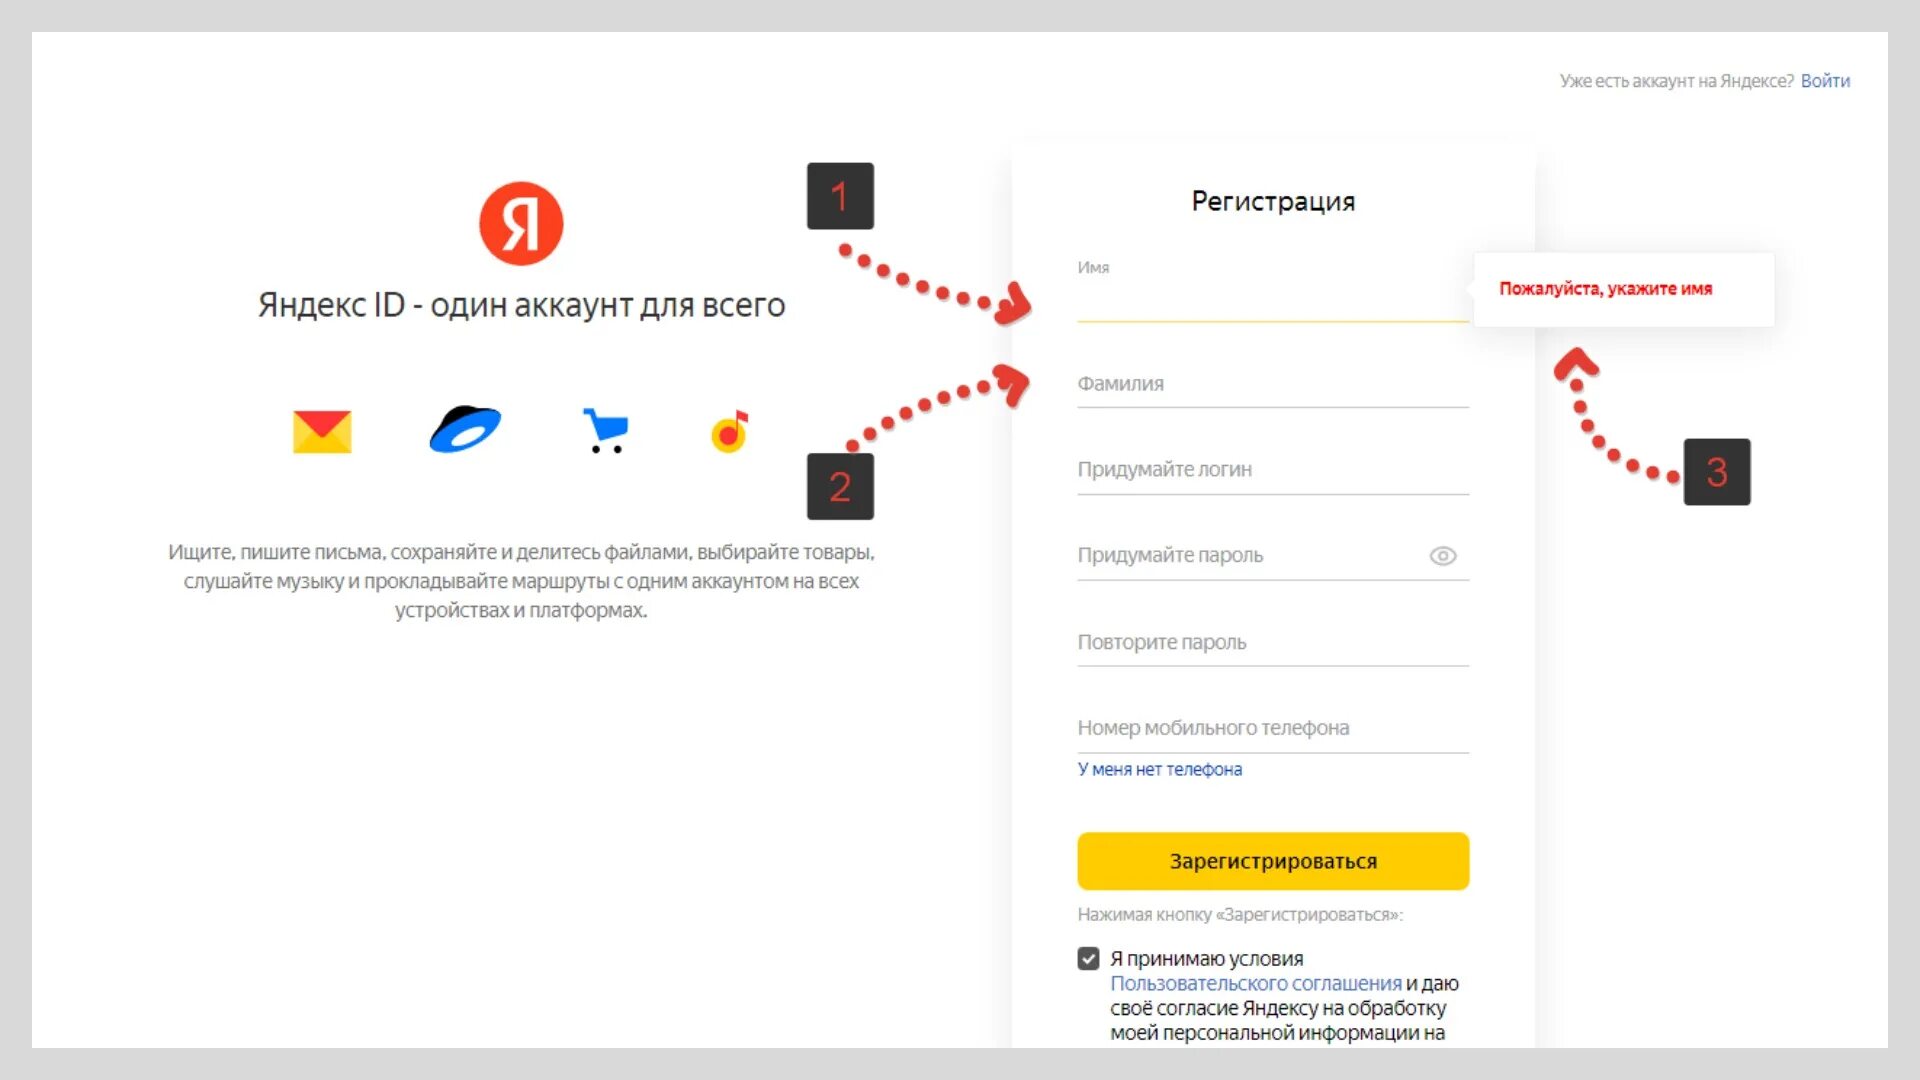 Создать аккаунт яндекса новый. Регистрация Янде. Зарегистрироваться в Яндексе. Завести аккаунт на Яндексе.